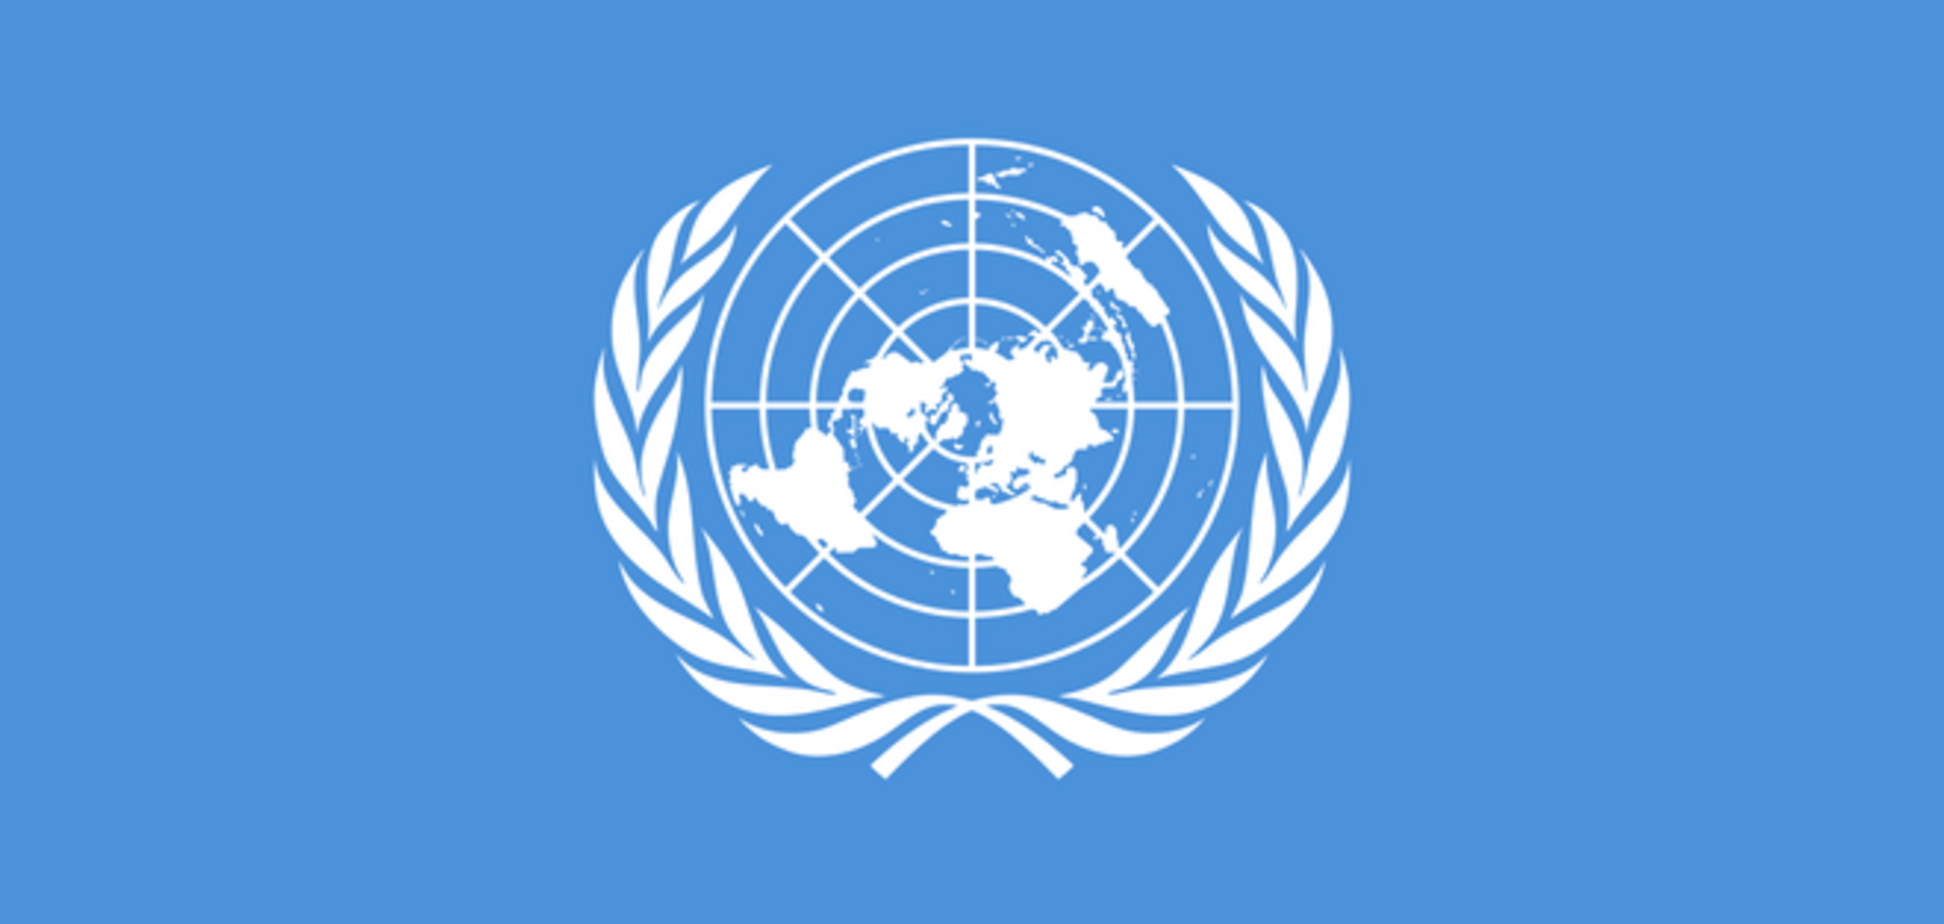 Ситуацию в Украине обсудят на заседании СБ ООН 25 сентября